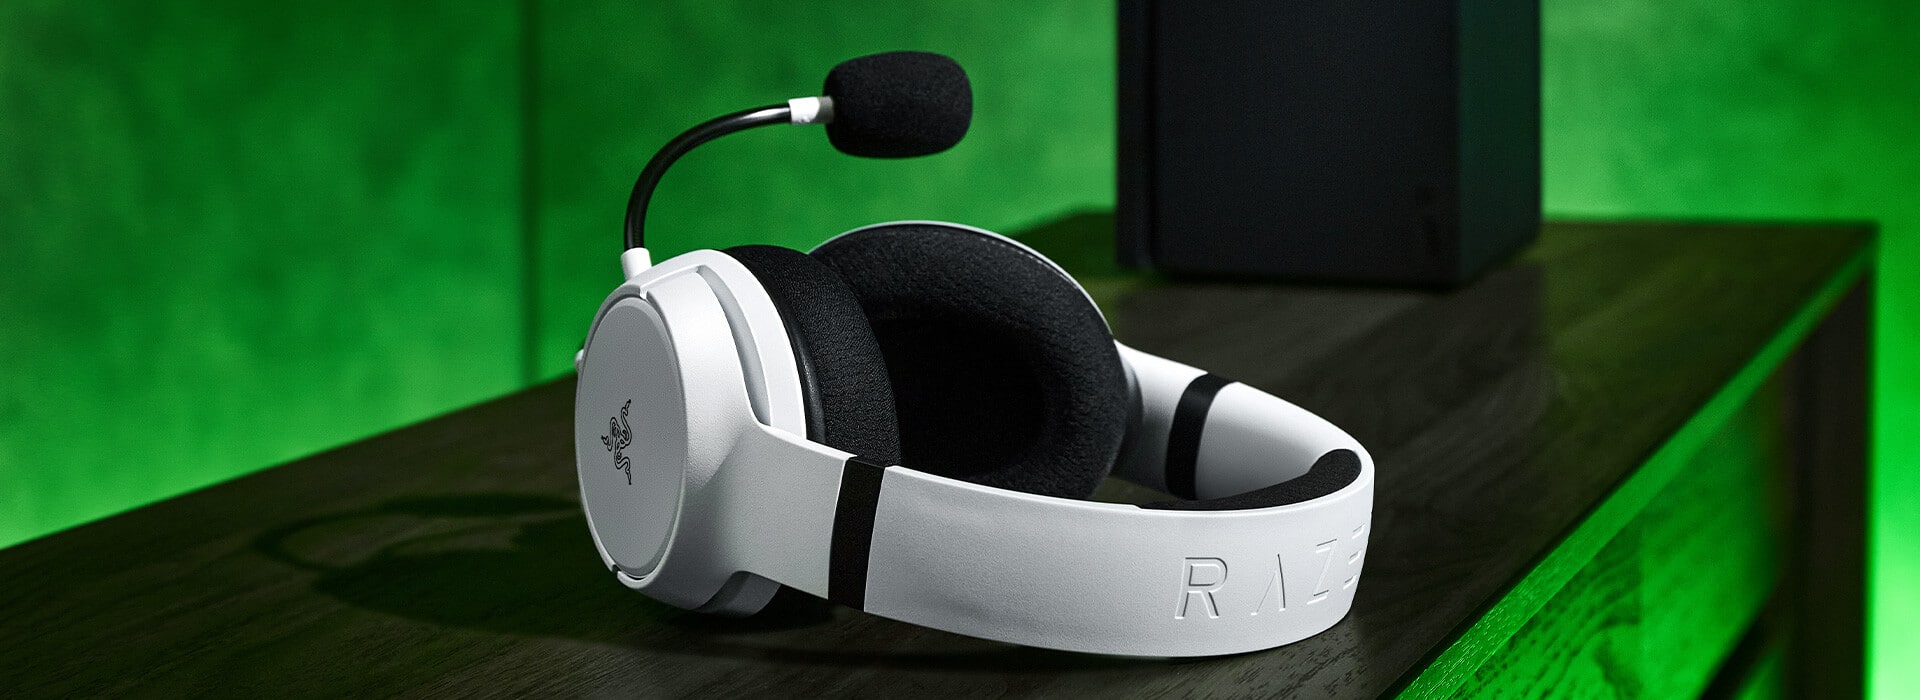 Razer Kaira for Xbox White Lifestyle Image